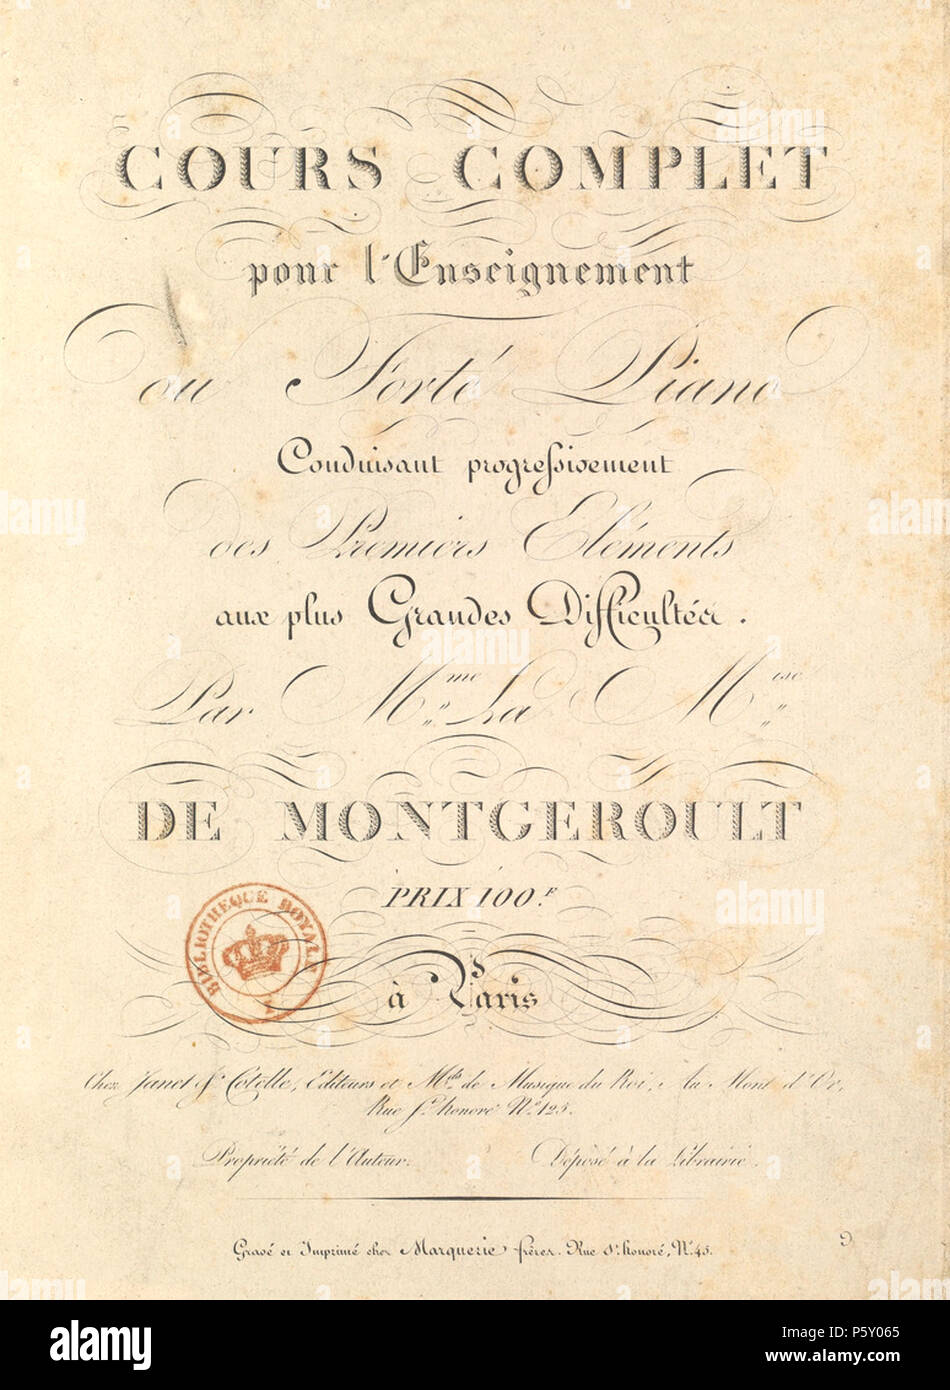 385 Cours complet pour l'enseignement du forte-piano - Hélène de  Montgeroult - page de titre Stock Photo - Alamy